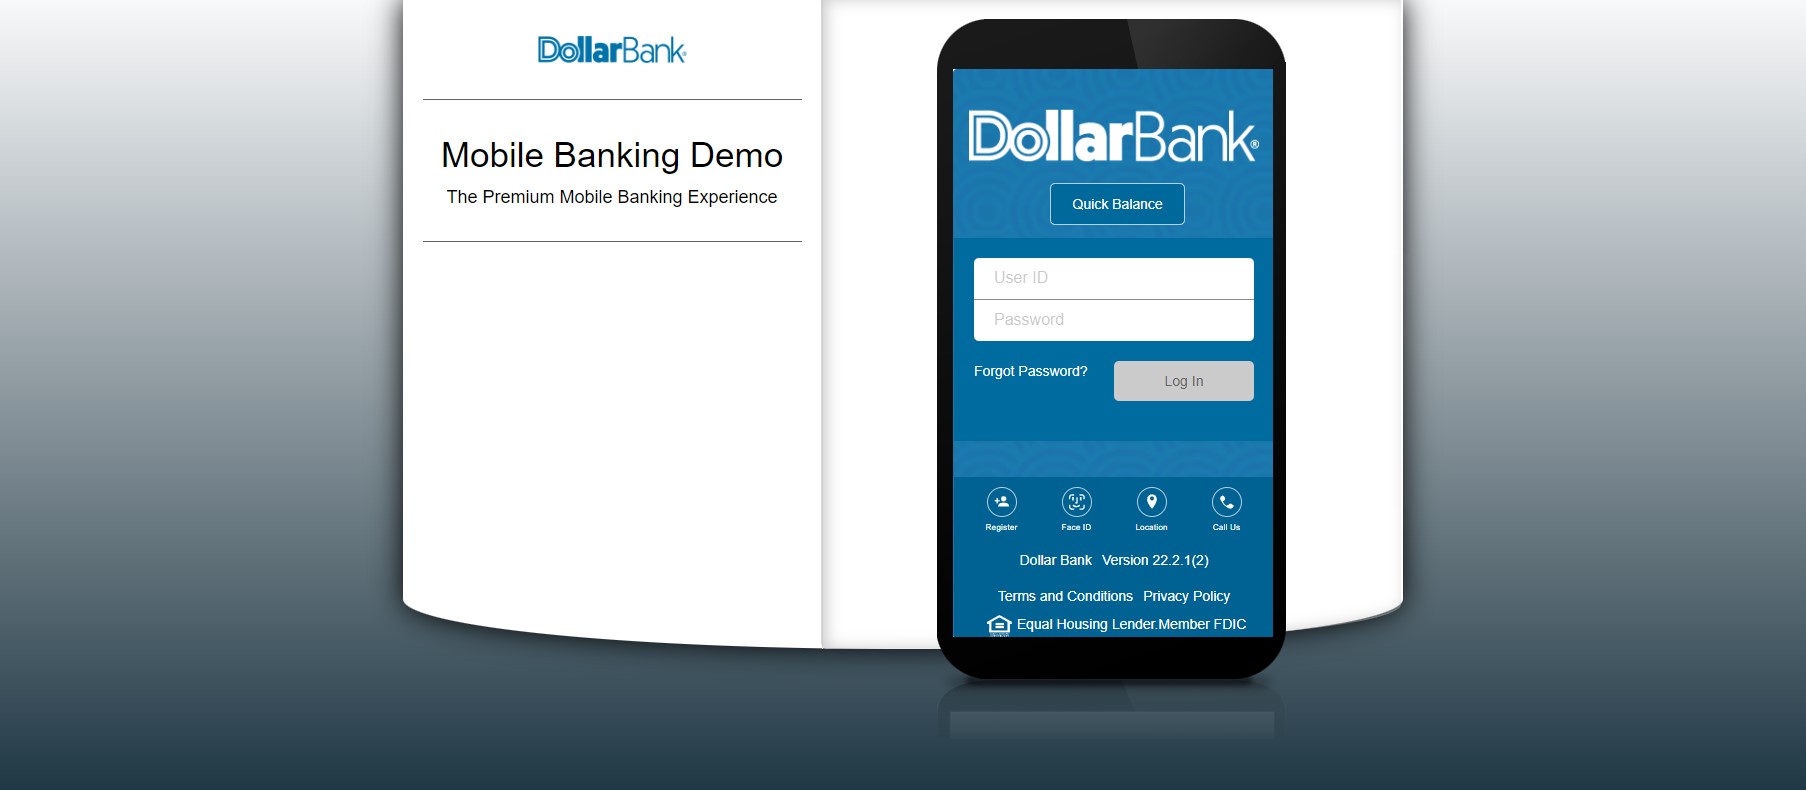 Mobile Banking Demo